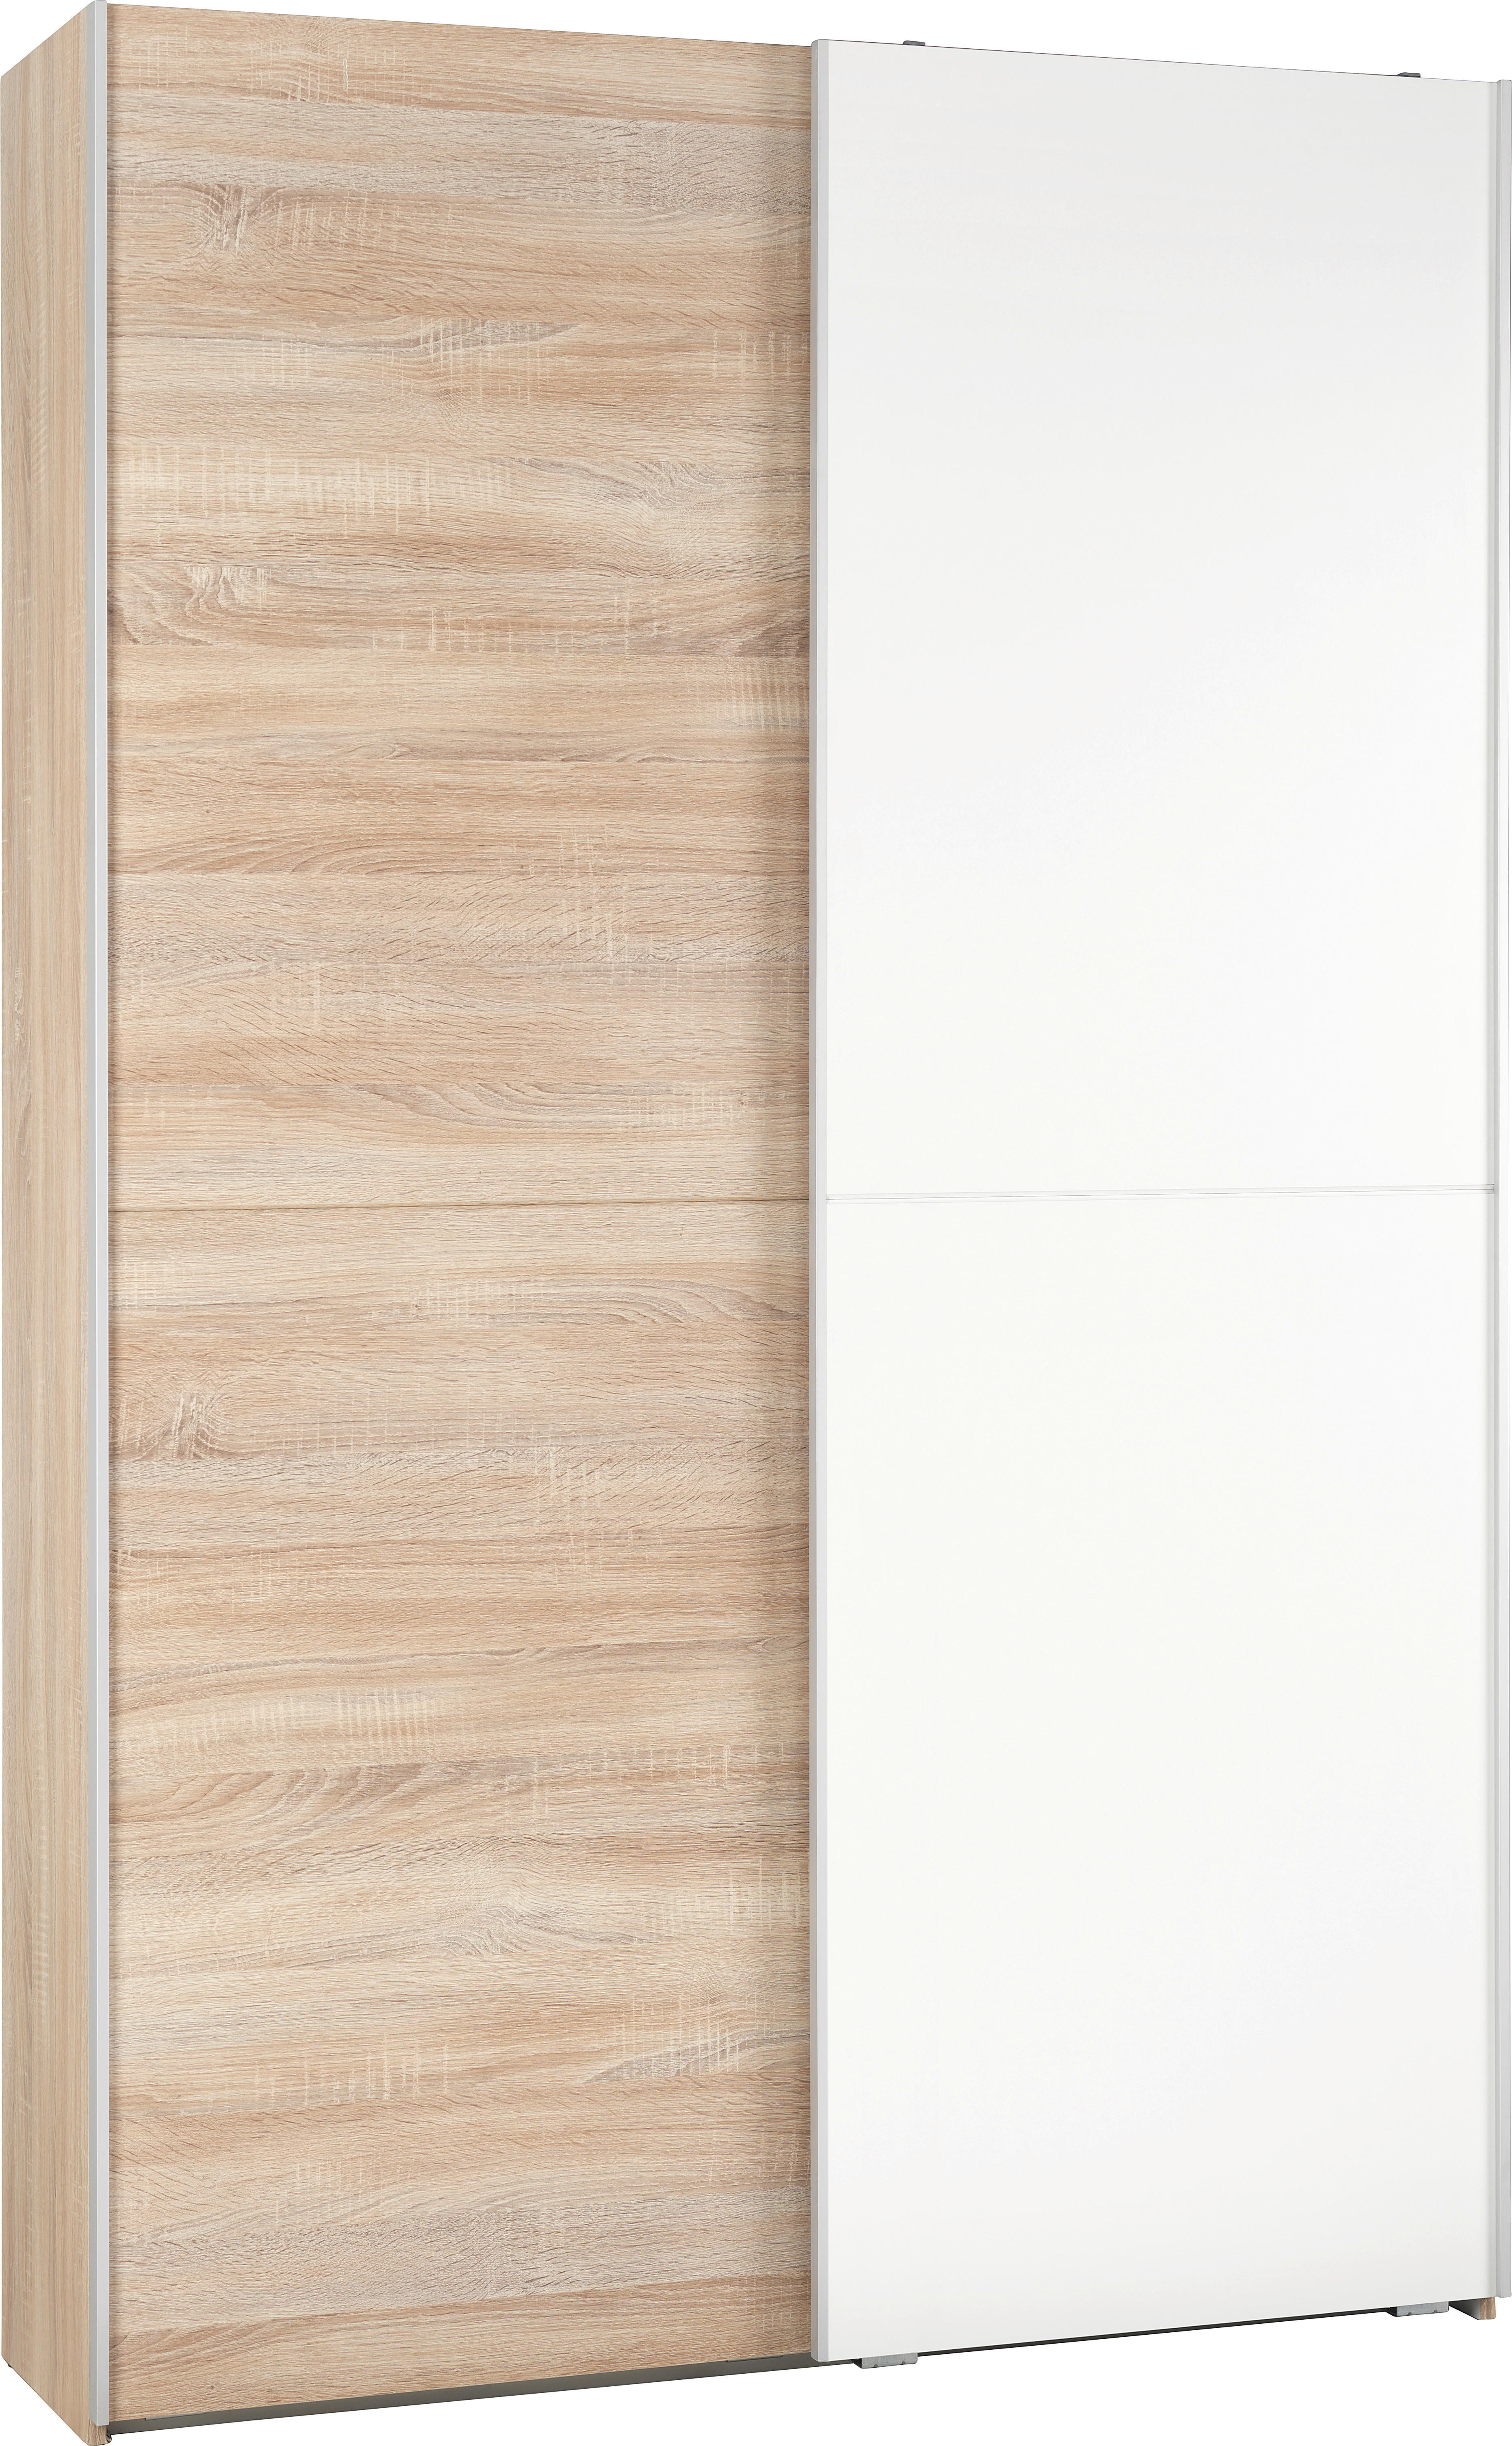 VIACÚČELOVÁ SKRIŇA, biela, dub sonoma, 125/195/38 cm - biela/dub sonoma, Design, kompozitné drevo (125/195/38cm) - Carryhome